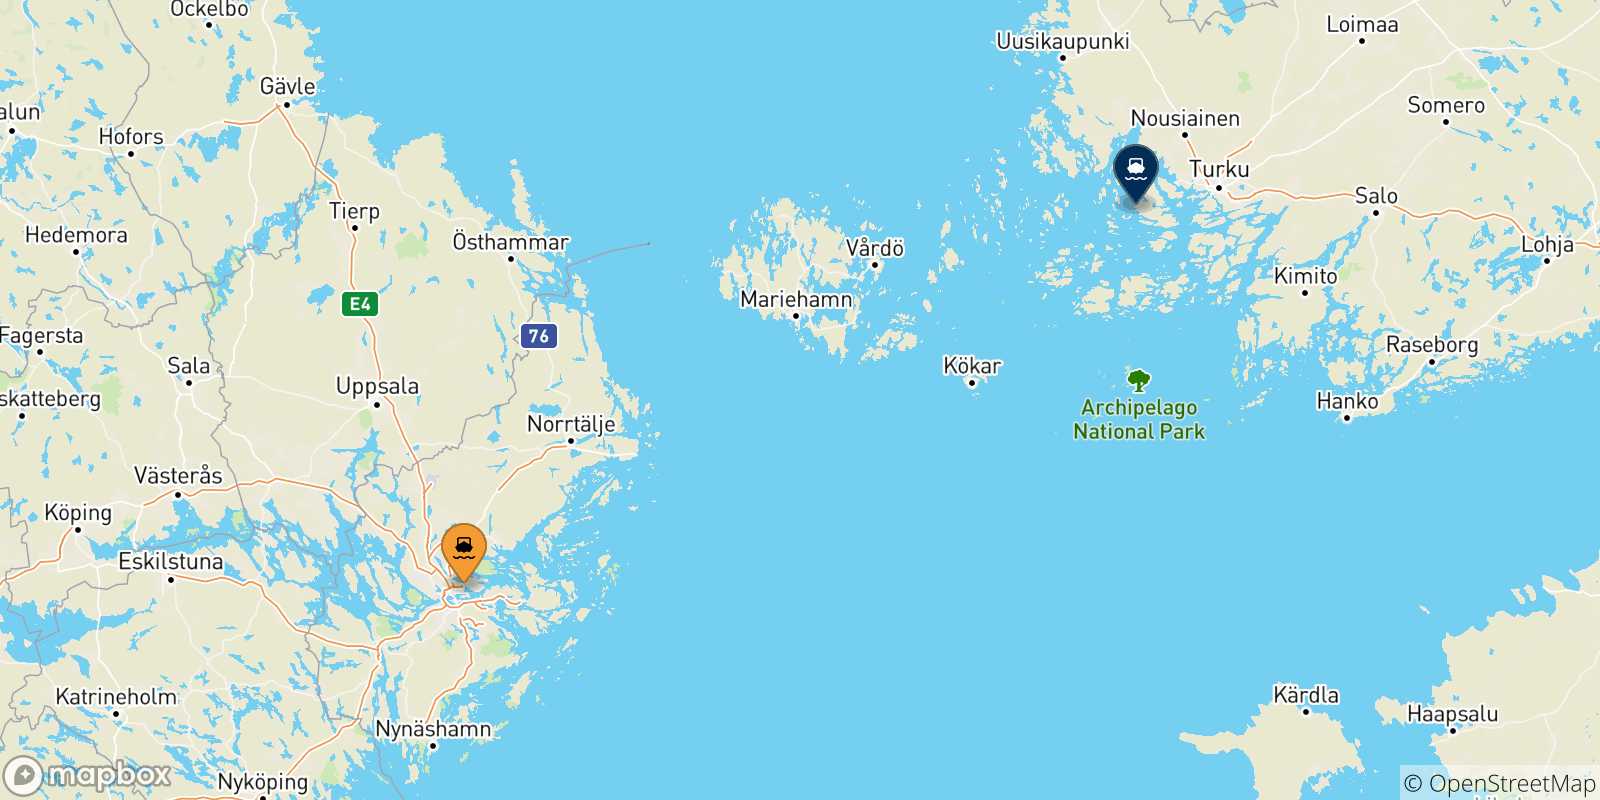 Mapa de las posibles rutas entre Suecia y  Turku